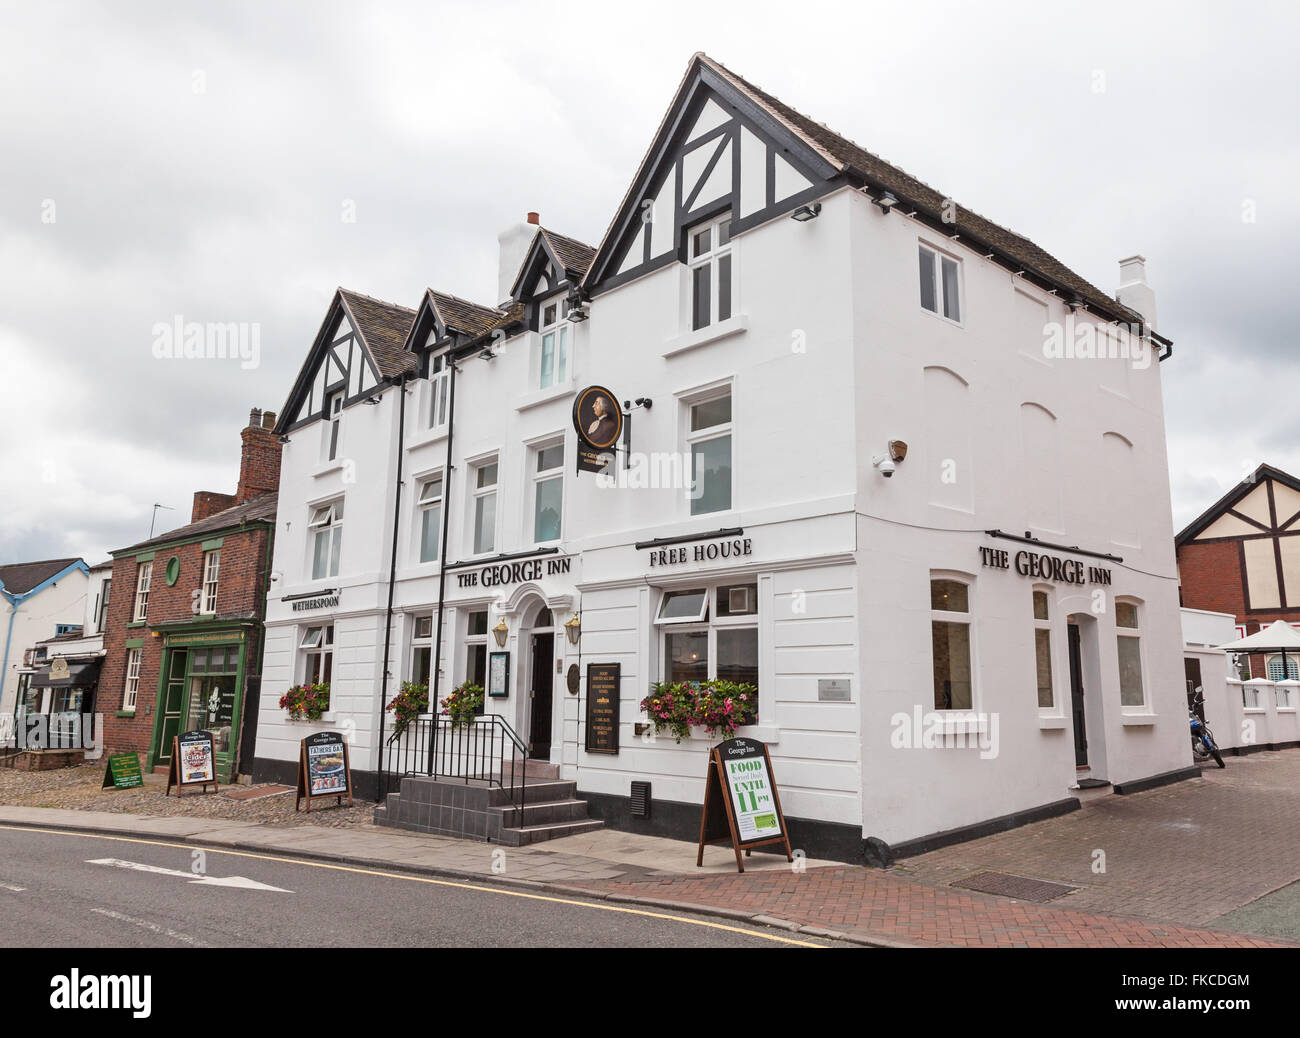 Le George Inn ou pub ou Place du marché public house England UK Cheshire Sandbach Banque D'Images